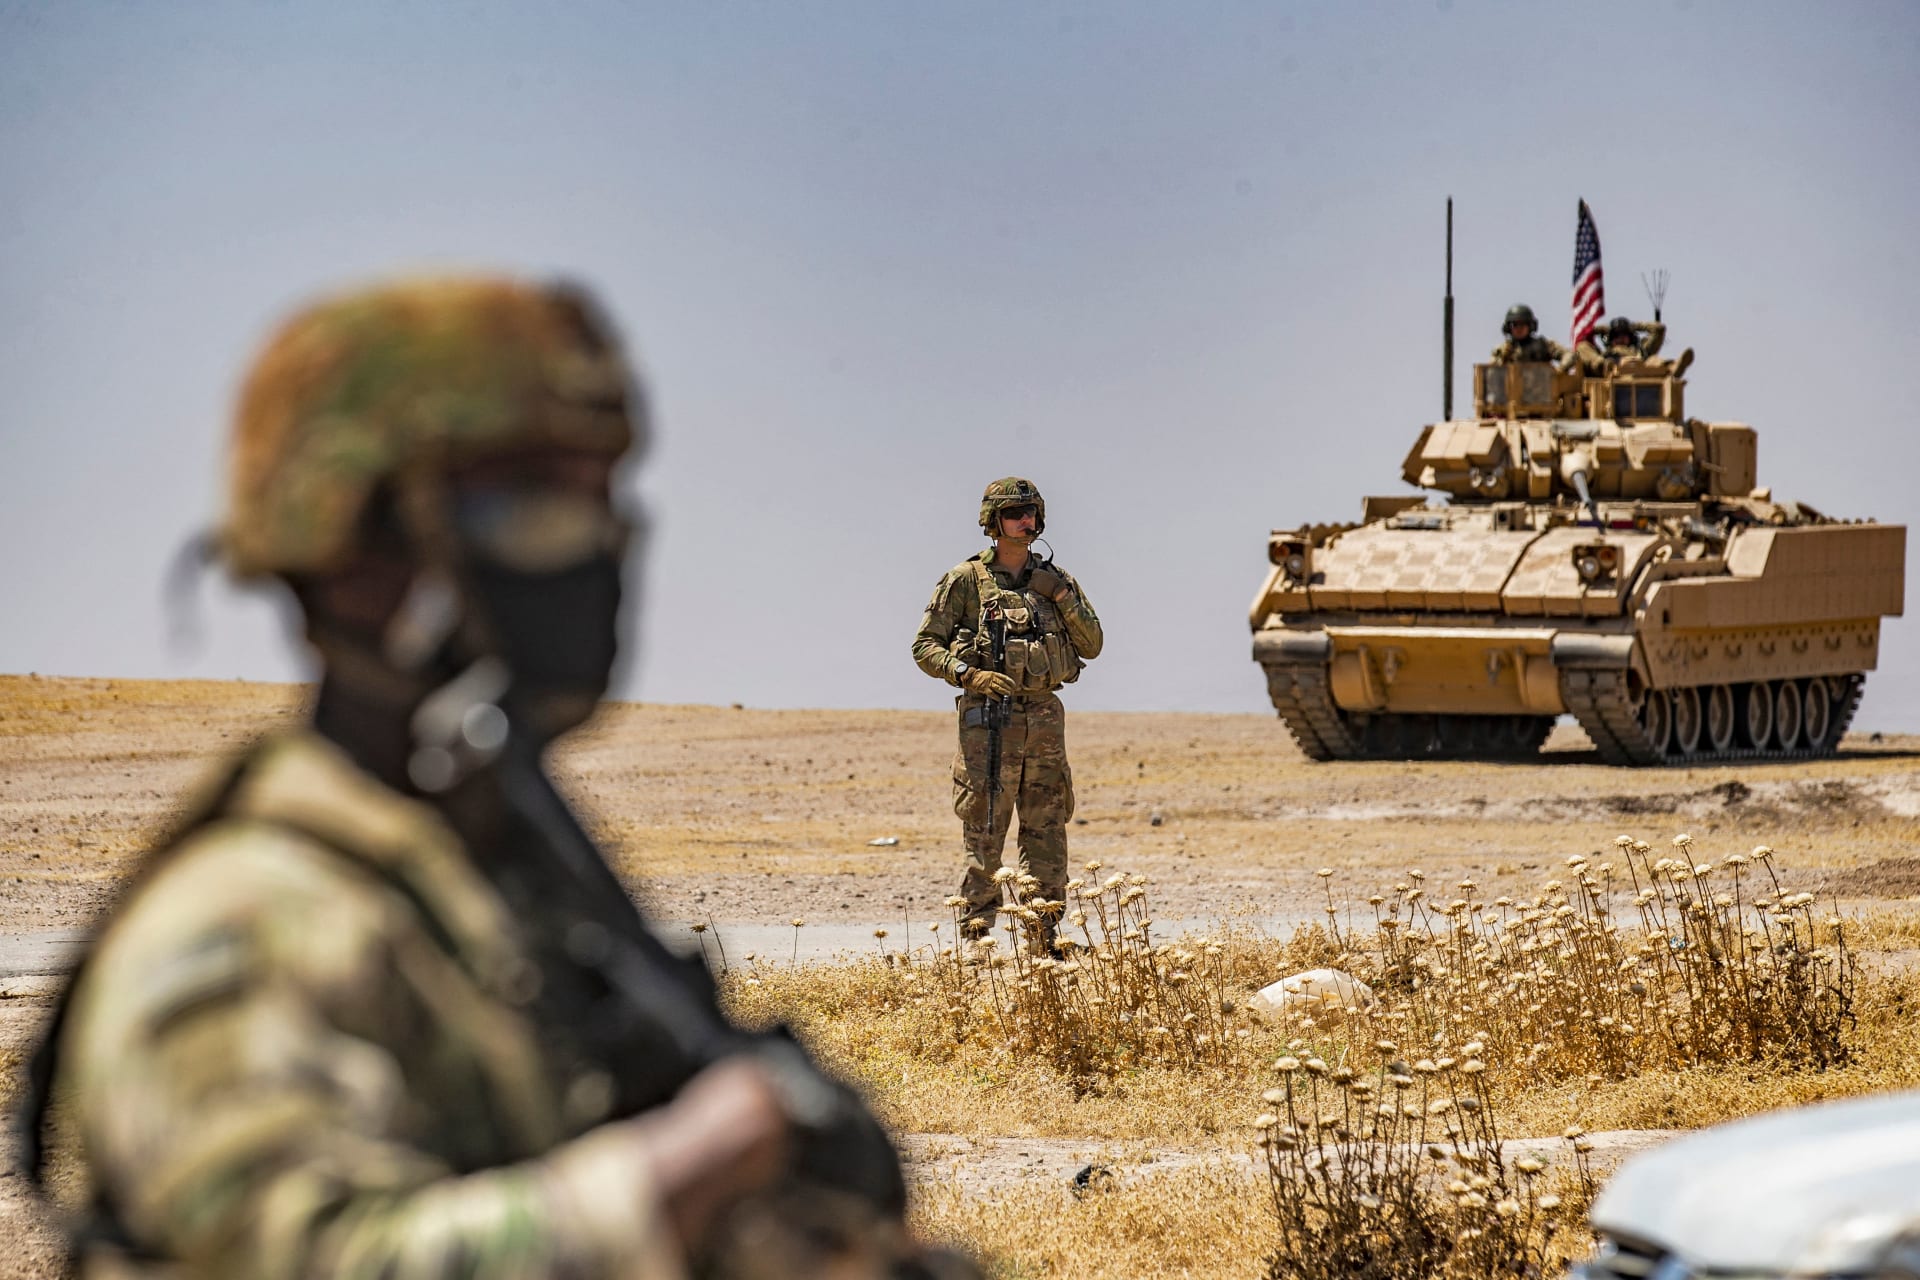 جندي أمريكي يقف بالقرب من مركبة برادلي القتالية خلال دورية بالقرب من آبار النفط في الرميلان في محافظة الحسكة شمال شرق سوريا، 22 يونيو 2021